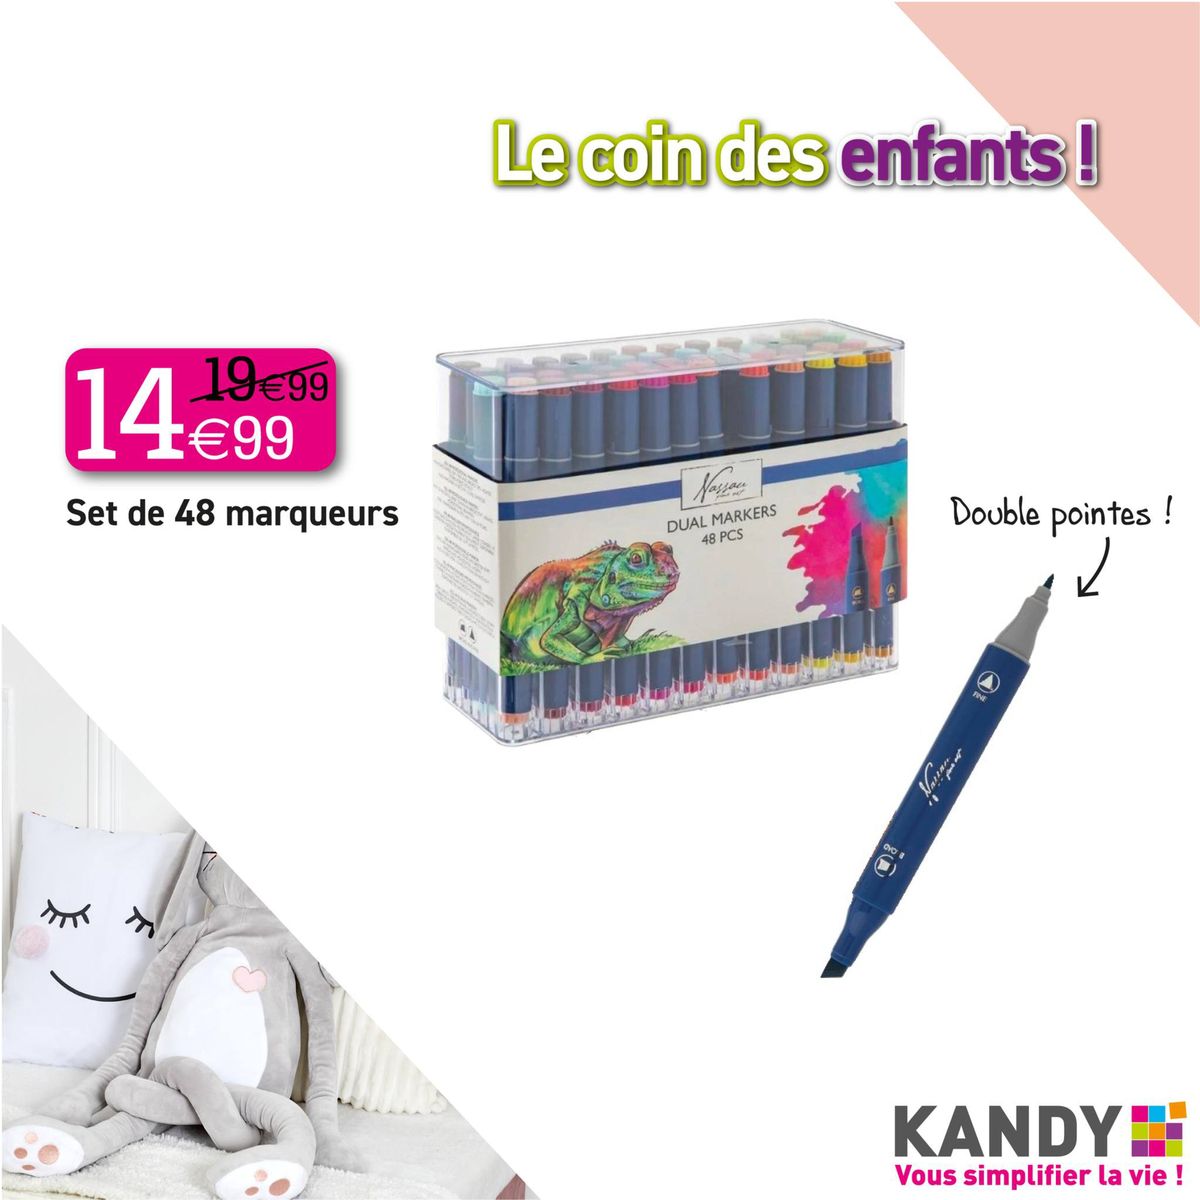 Catalogue LE COIN DES ENFANTS !, page 00003